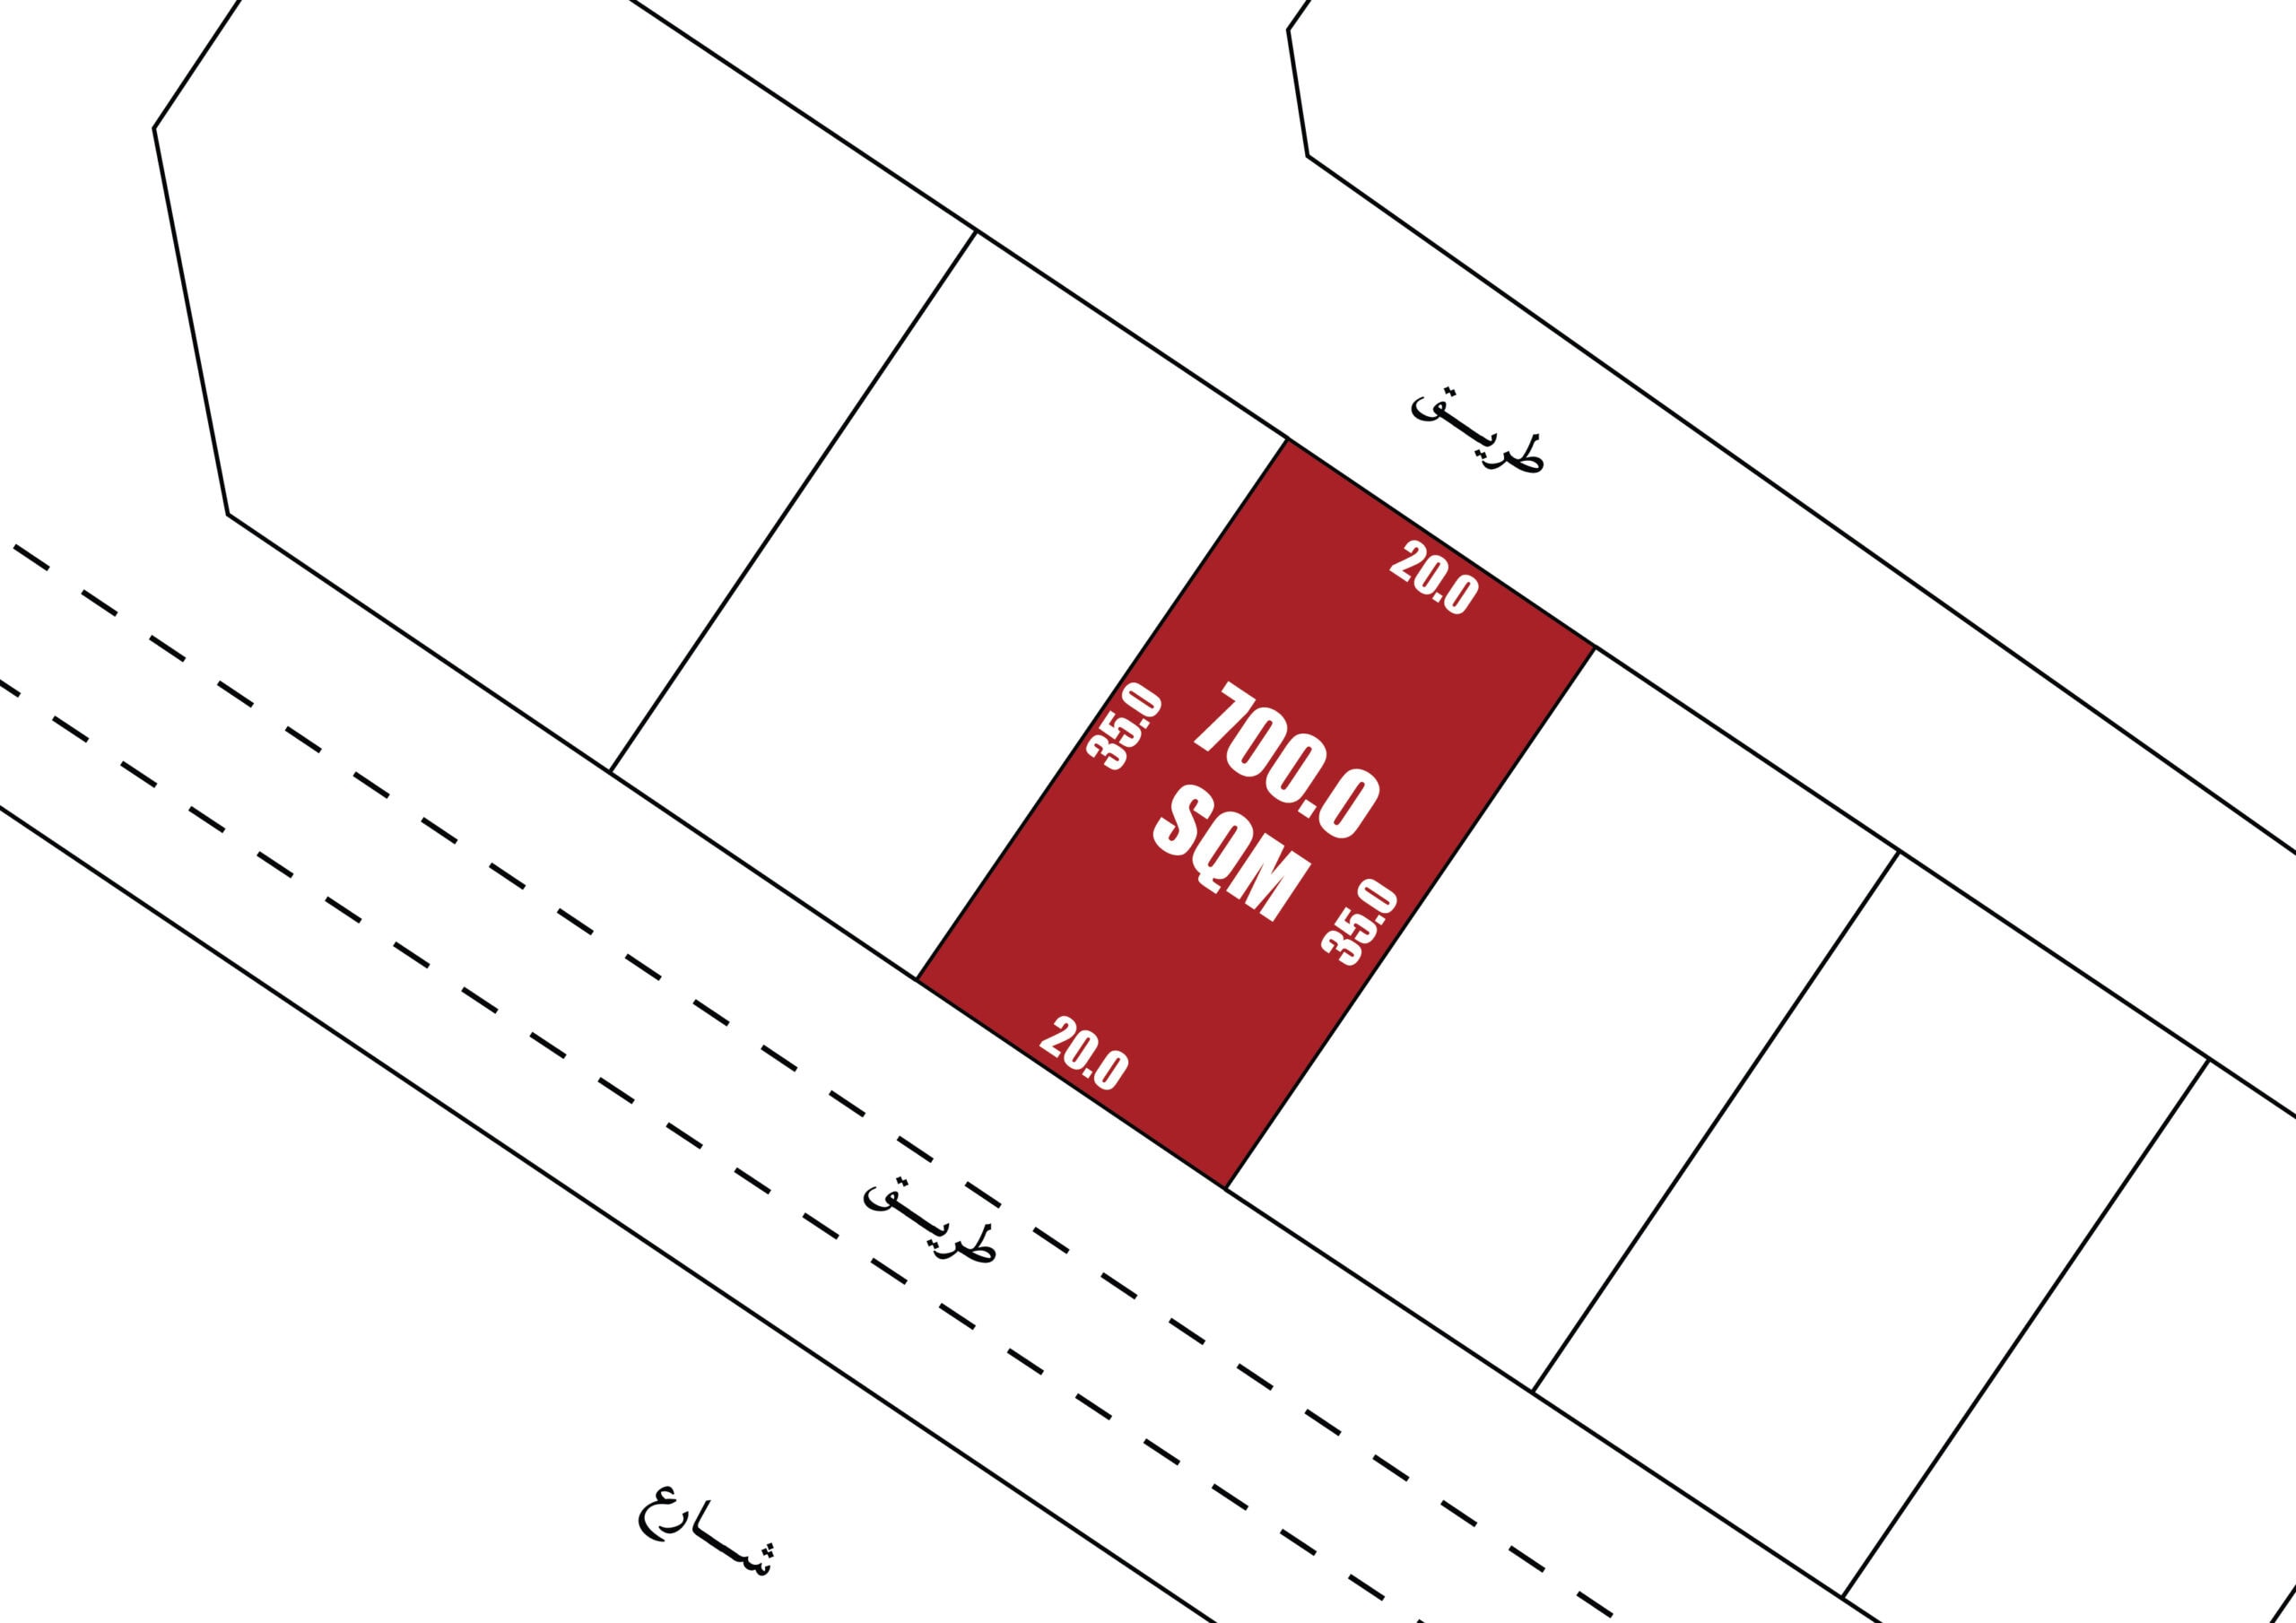 رسم تخطيطي لتخطيط عقار يتميز بمساحة مظللة تبلغ 700 متر مربع باللون الأحمر، تحدها خطوط متقطعة، مع قياسات وتعليقات نصية باللغة العربية.